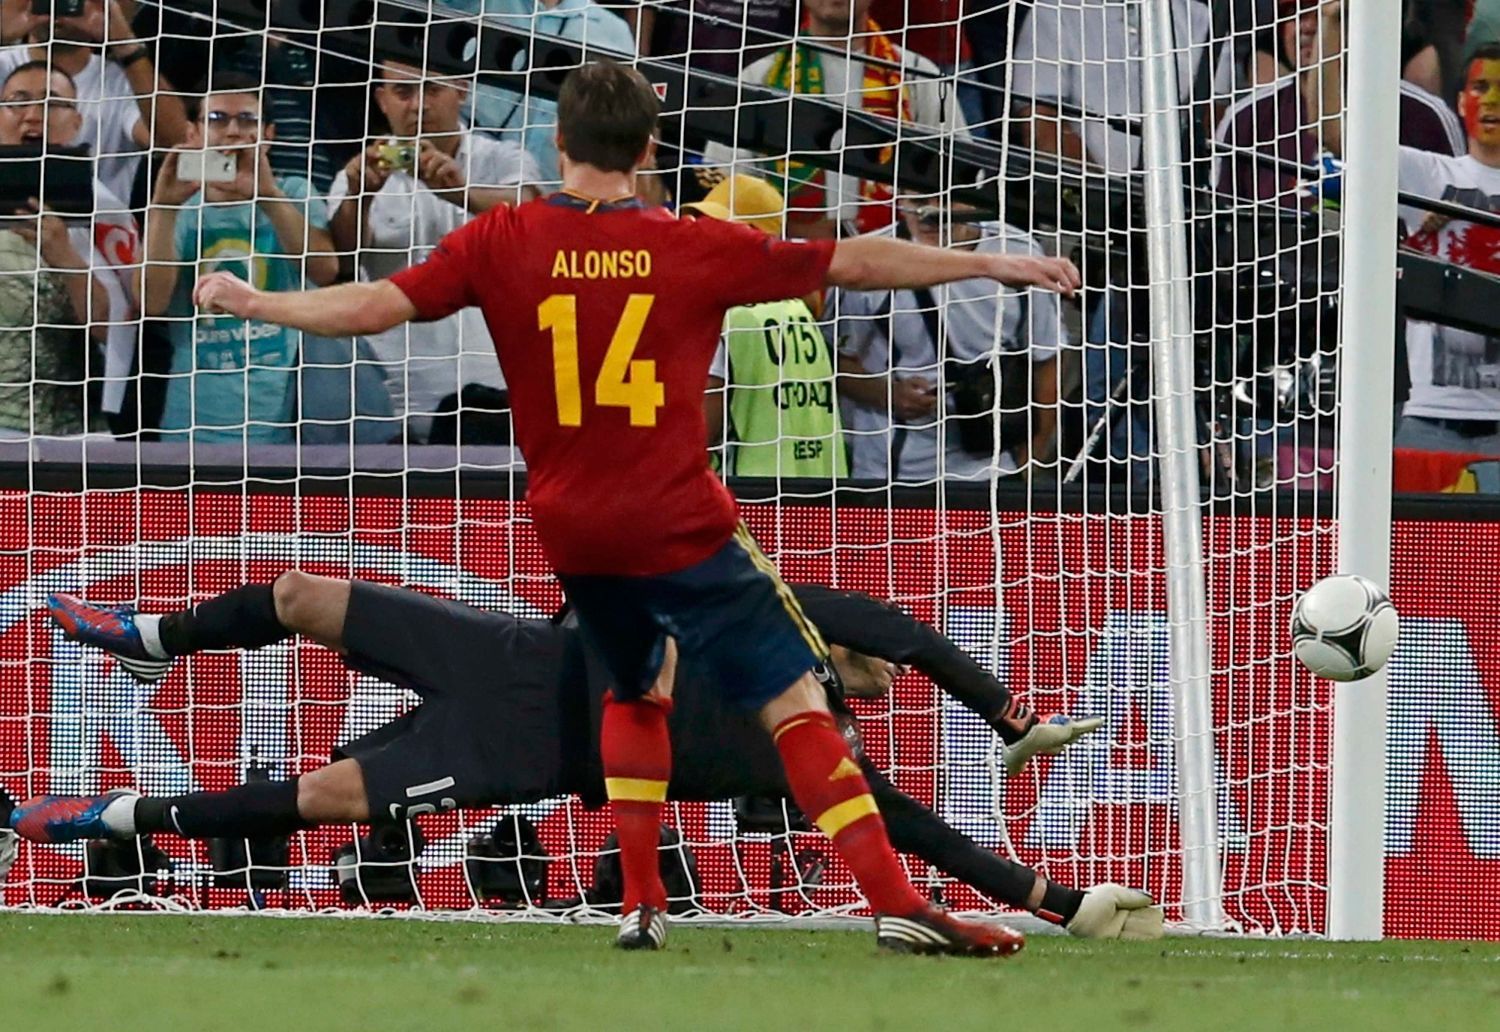 Xabi Alonso neprostřeli při penaltě brankáře Ruie Patrícia během semifinálového utkání Eura 2012 mezi Portugalskem a Španělskem.